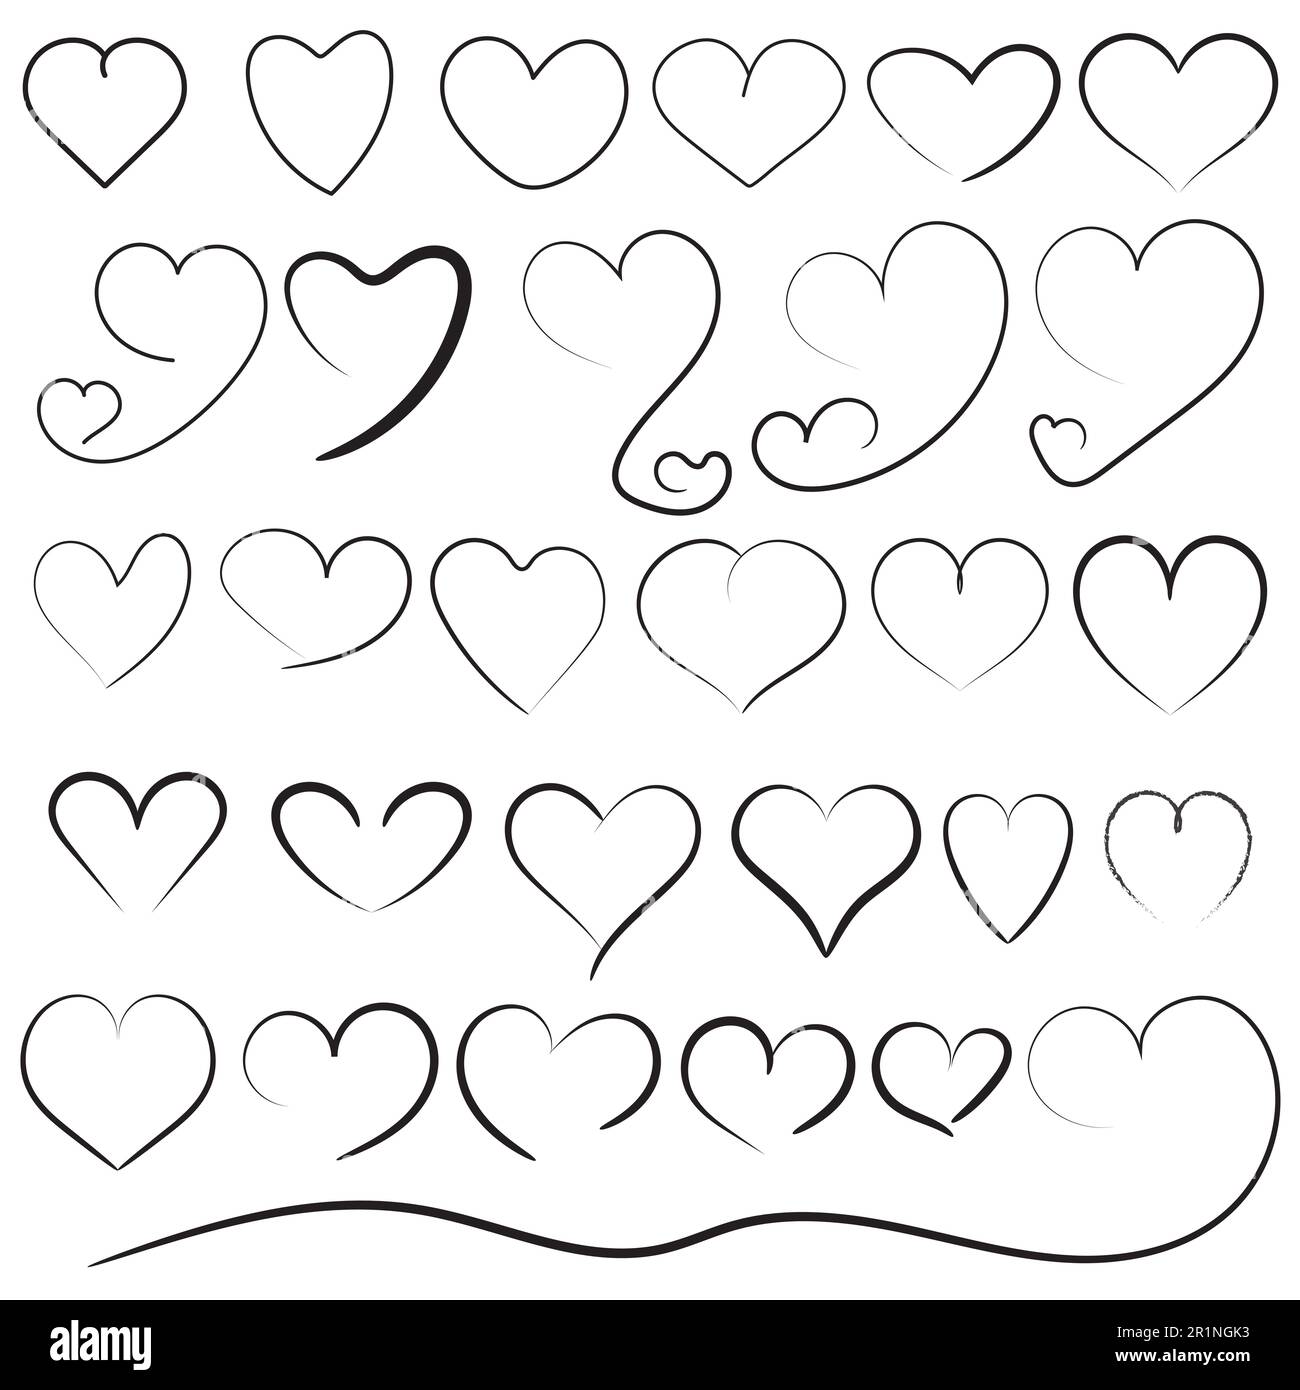 Herzform mit Skizzen- oder Handzeichensymbol, verschiedene Liebesherzen zeichnen Sammlungsvektordesign auf weißem Hintergrund Stockfoto